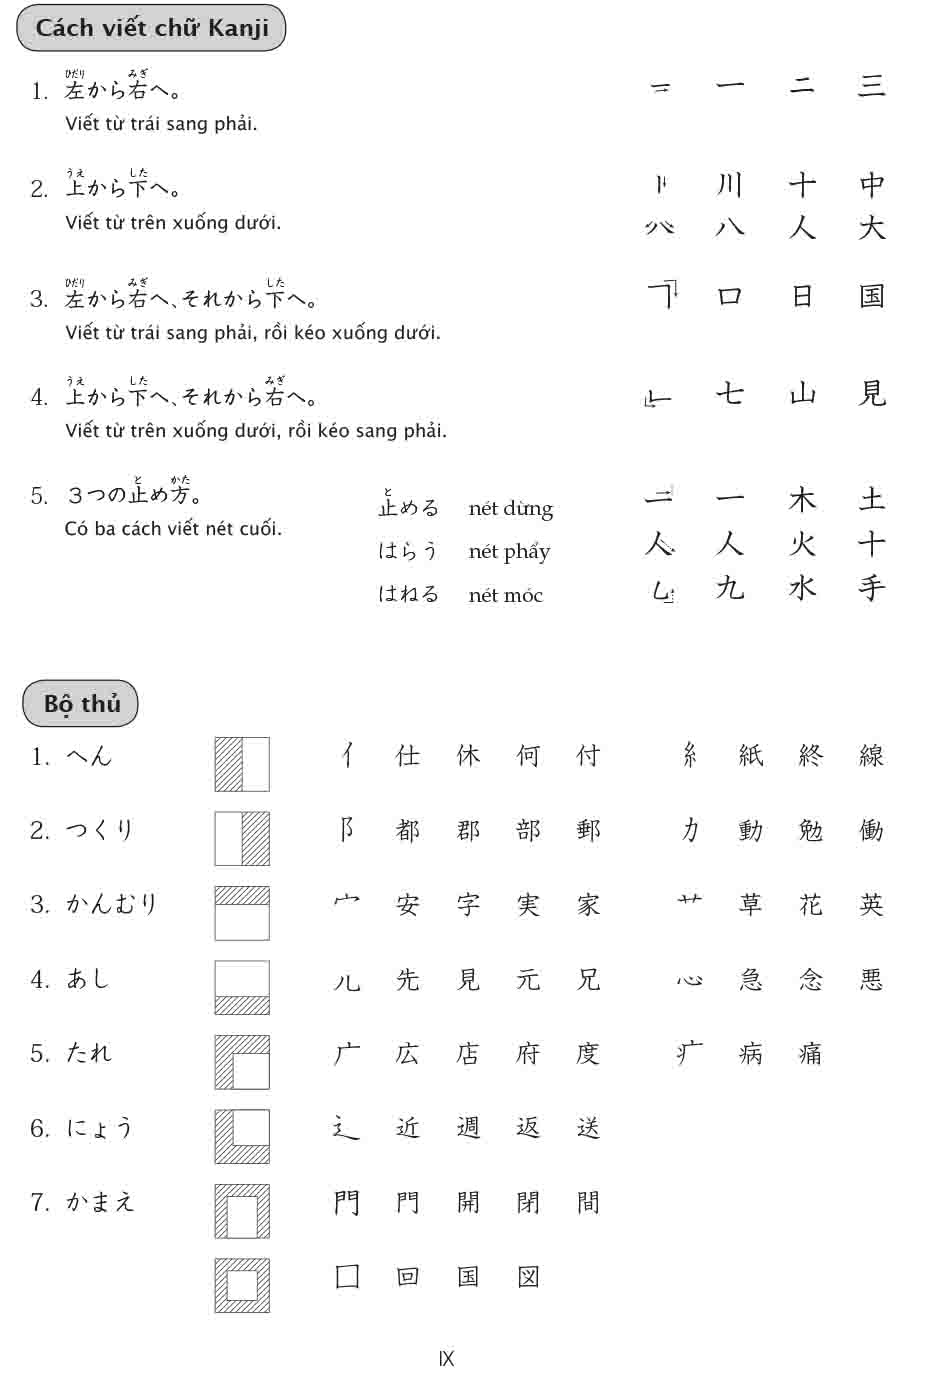 15 Phút Luyện Kanji Mỗi Ngày - Vol 1